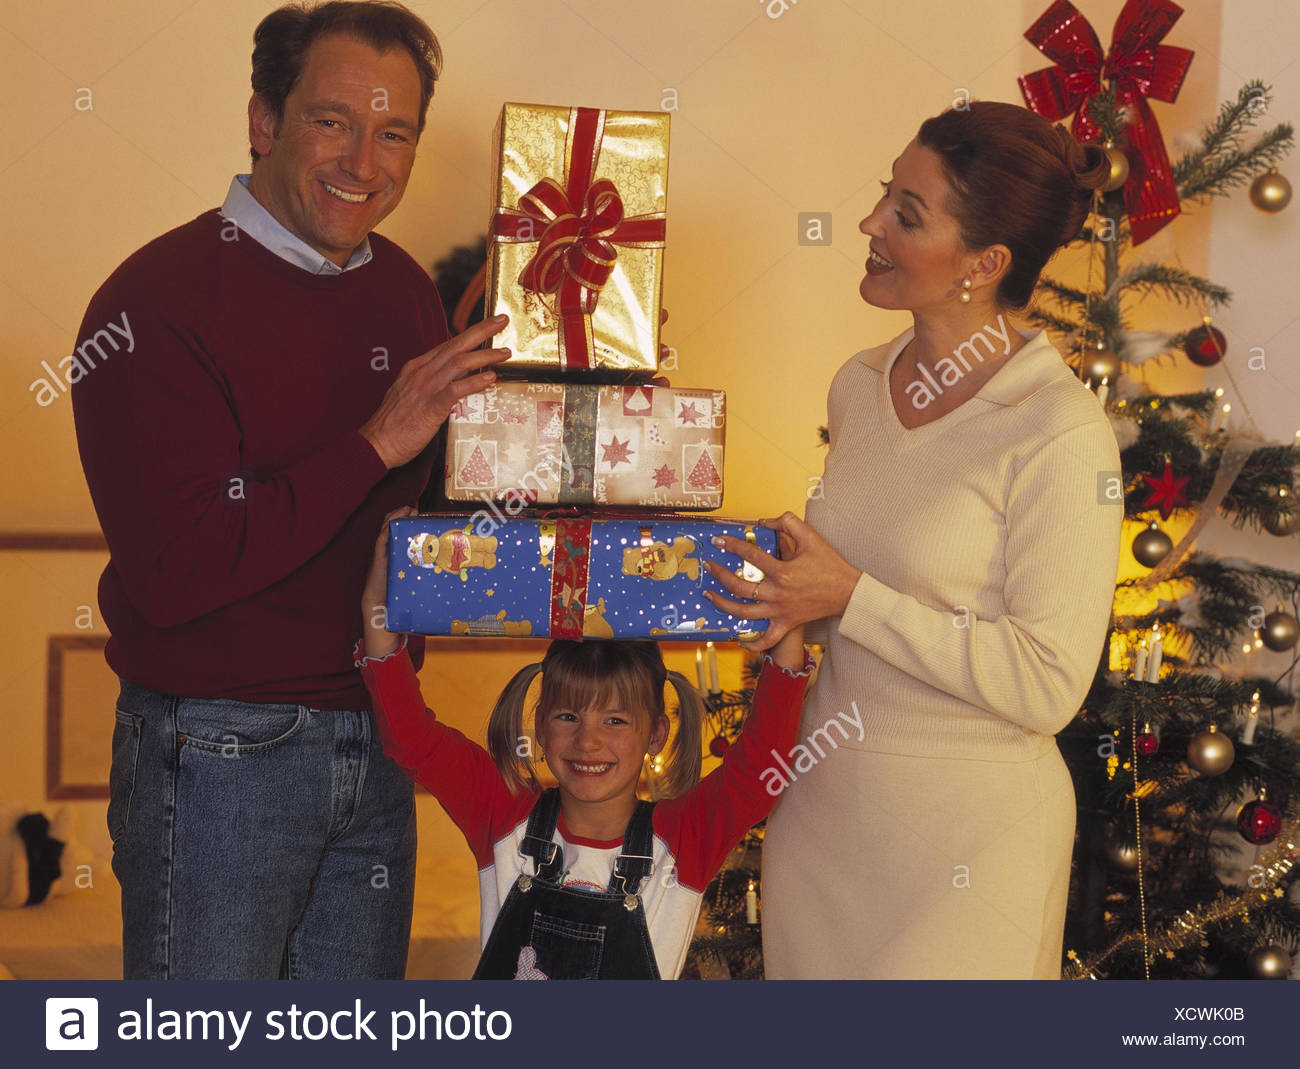 Regali Di Natale Per Genitori.Natale Famiglia Regali Di Natale Felicemente La Vigilia Di Natale La Vigilia Di Natale Per Natale